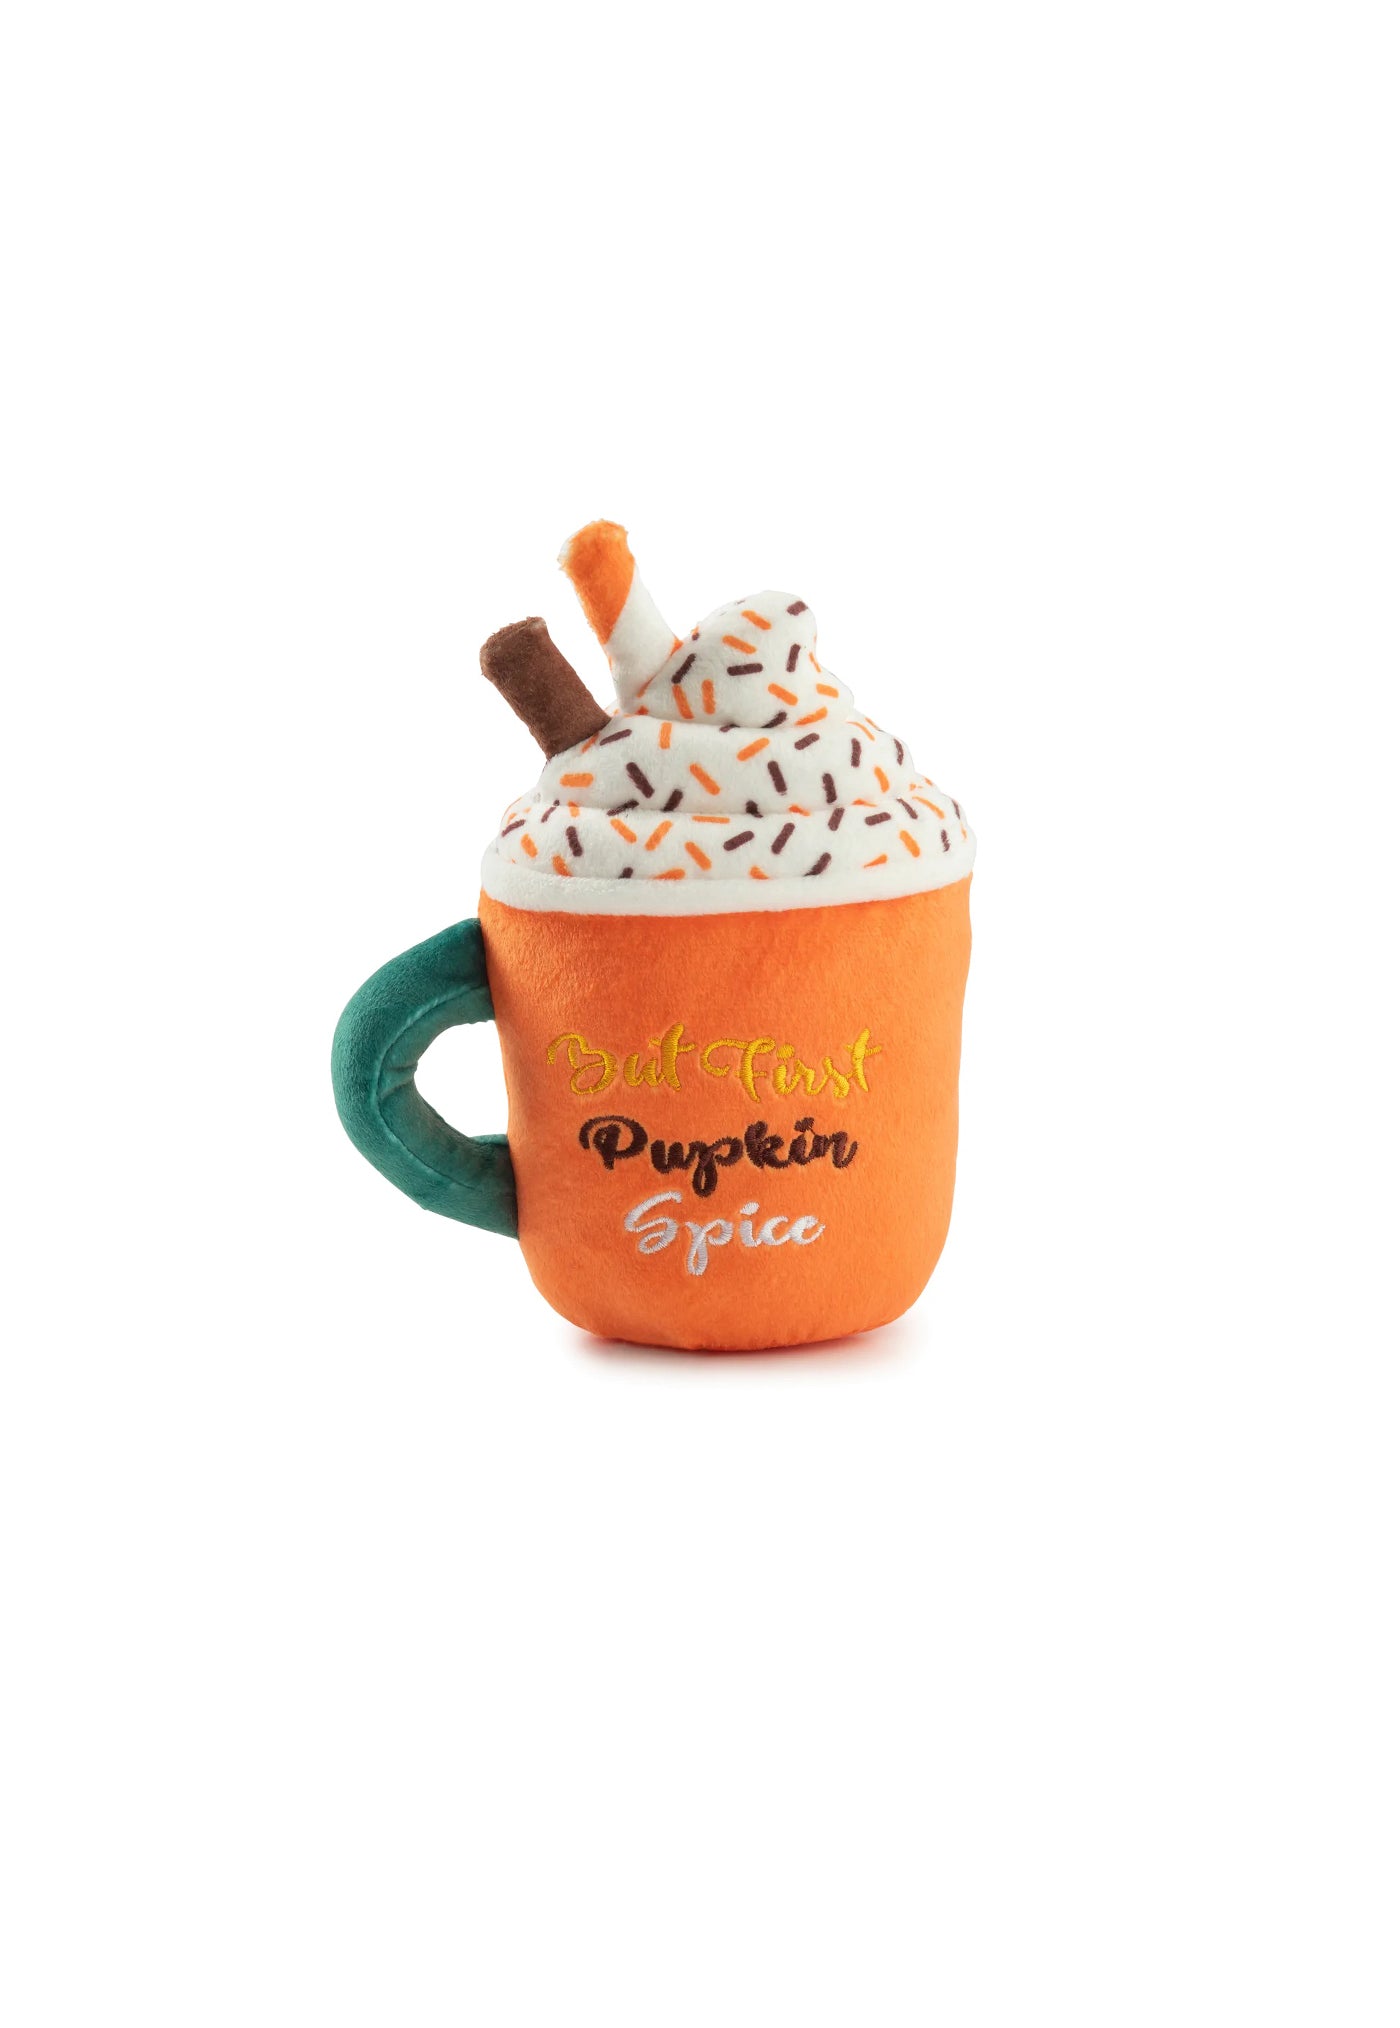 Pupkin Spice Latte Mug sold by Angel Divine